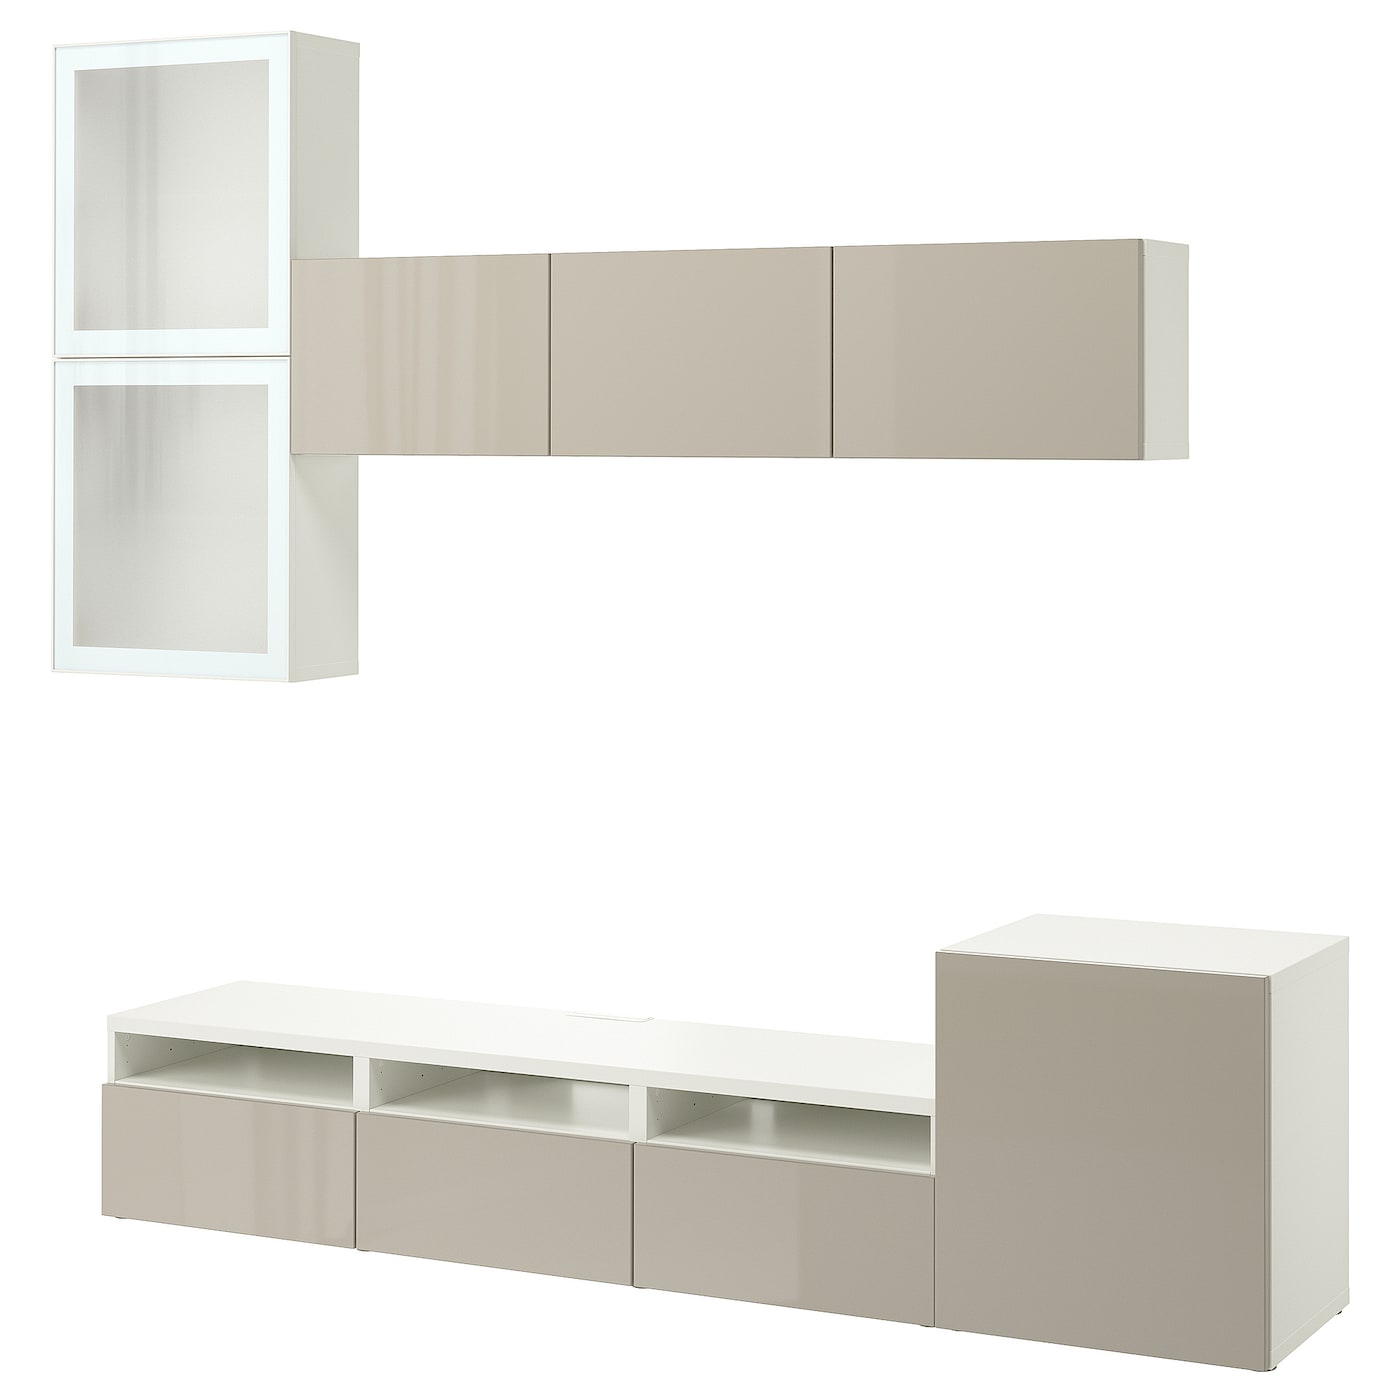 Комбинация для хранения ТВ - IKEA BESTÅ/BESTA, 211x42x300см, белый/светло-коричневый, БЕСТО ИКЕА